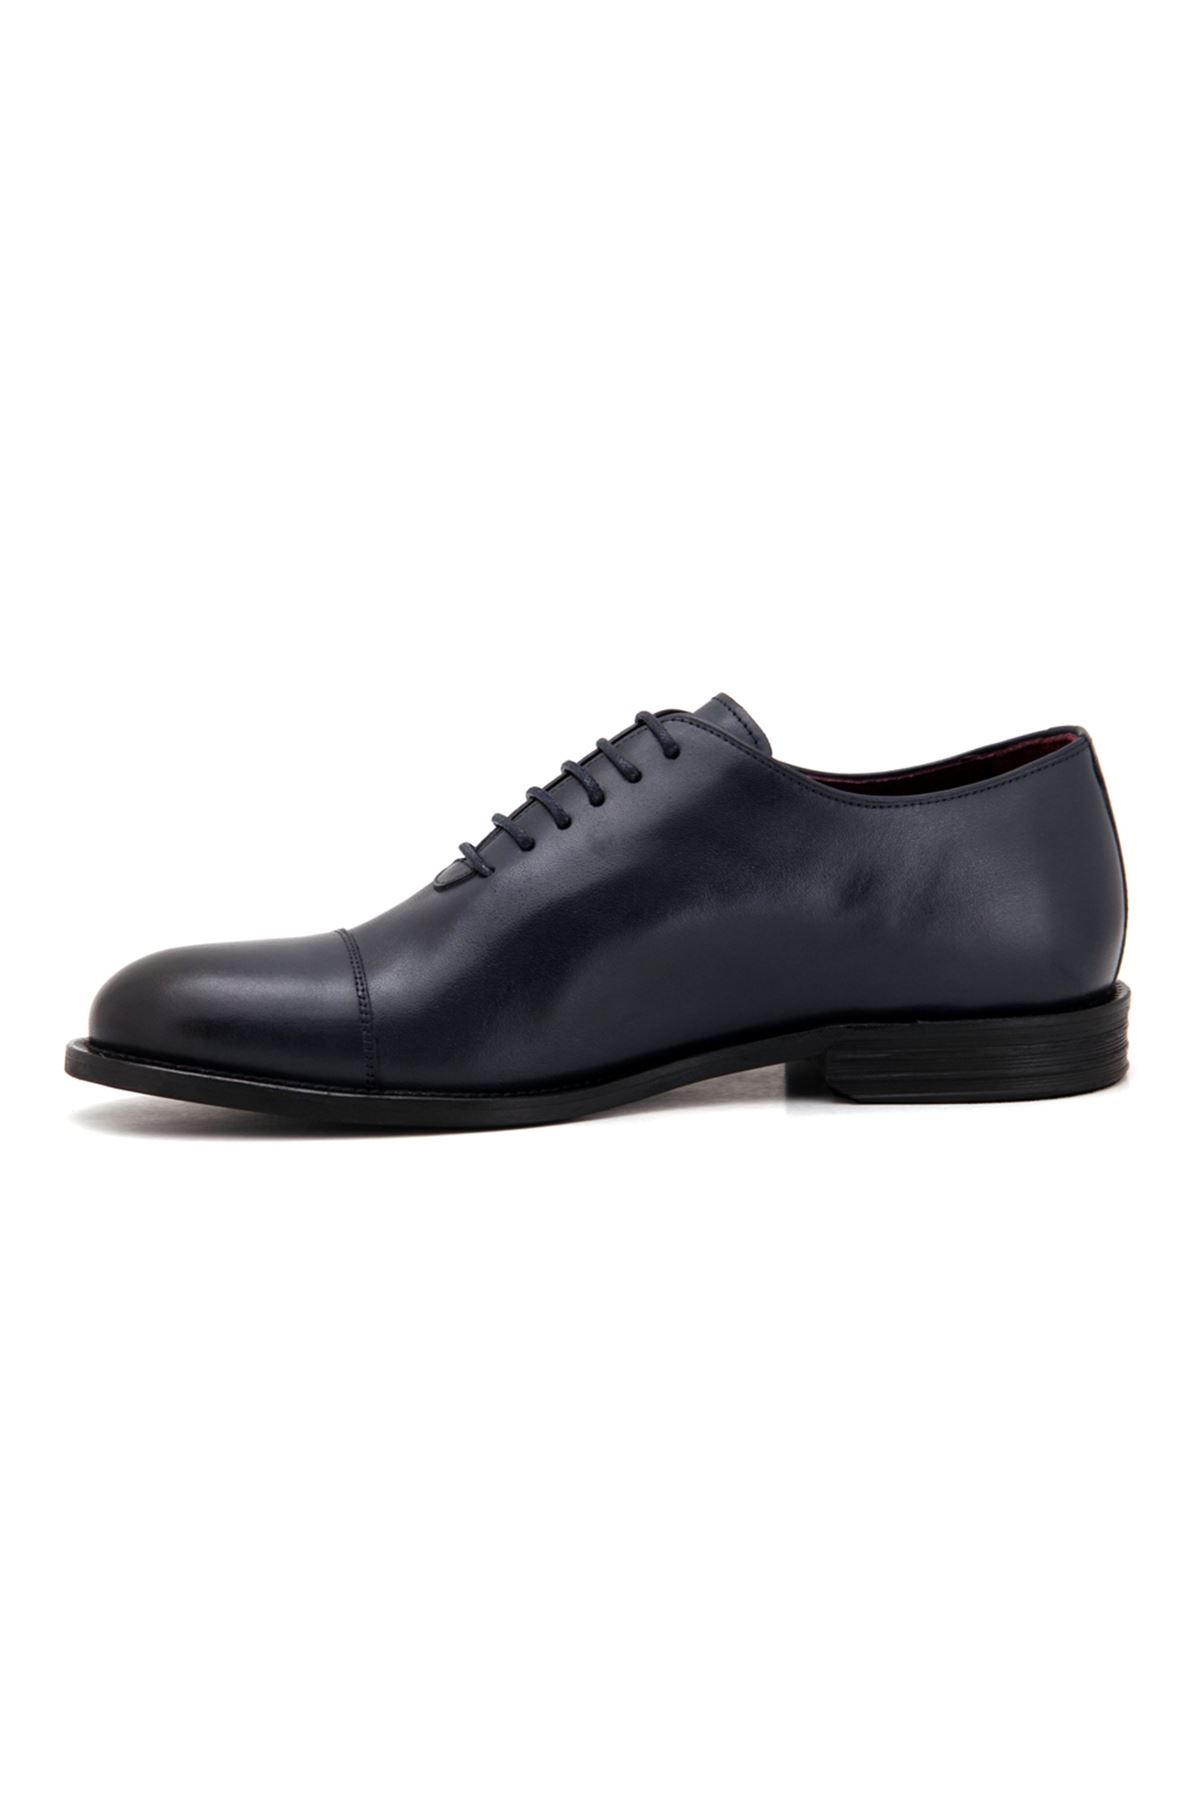 3212 Libero Klasik Erkek Ayakkabı - Lacivert